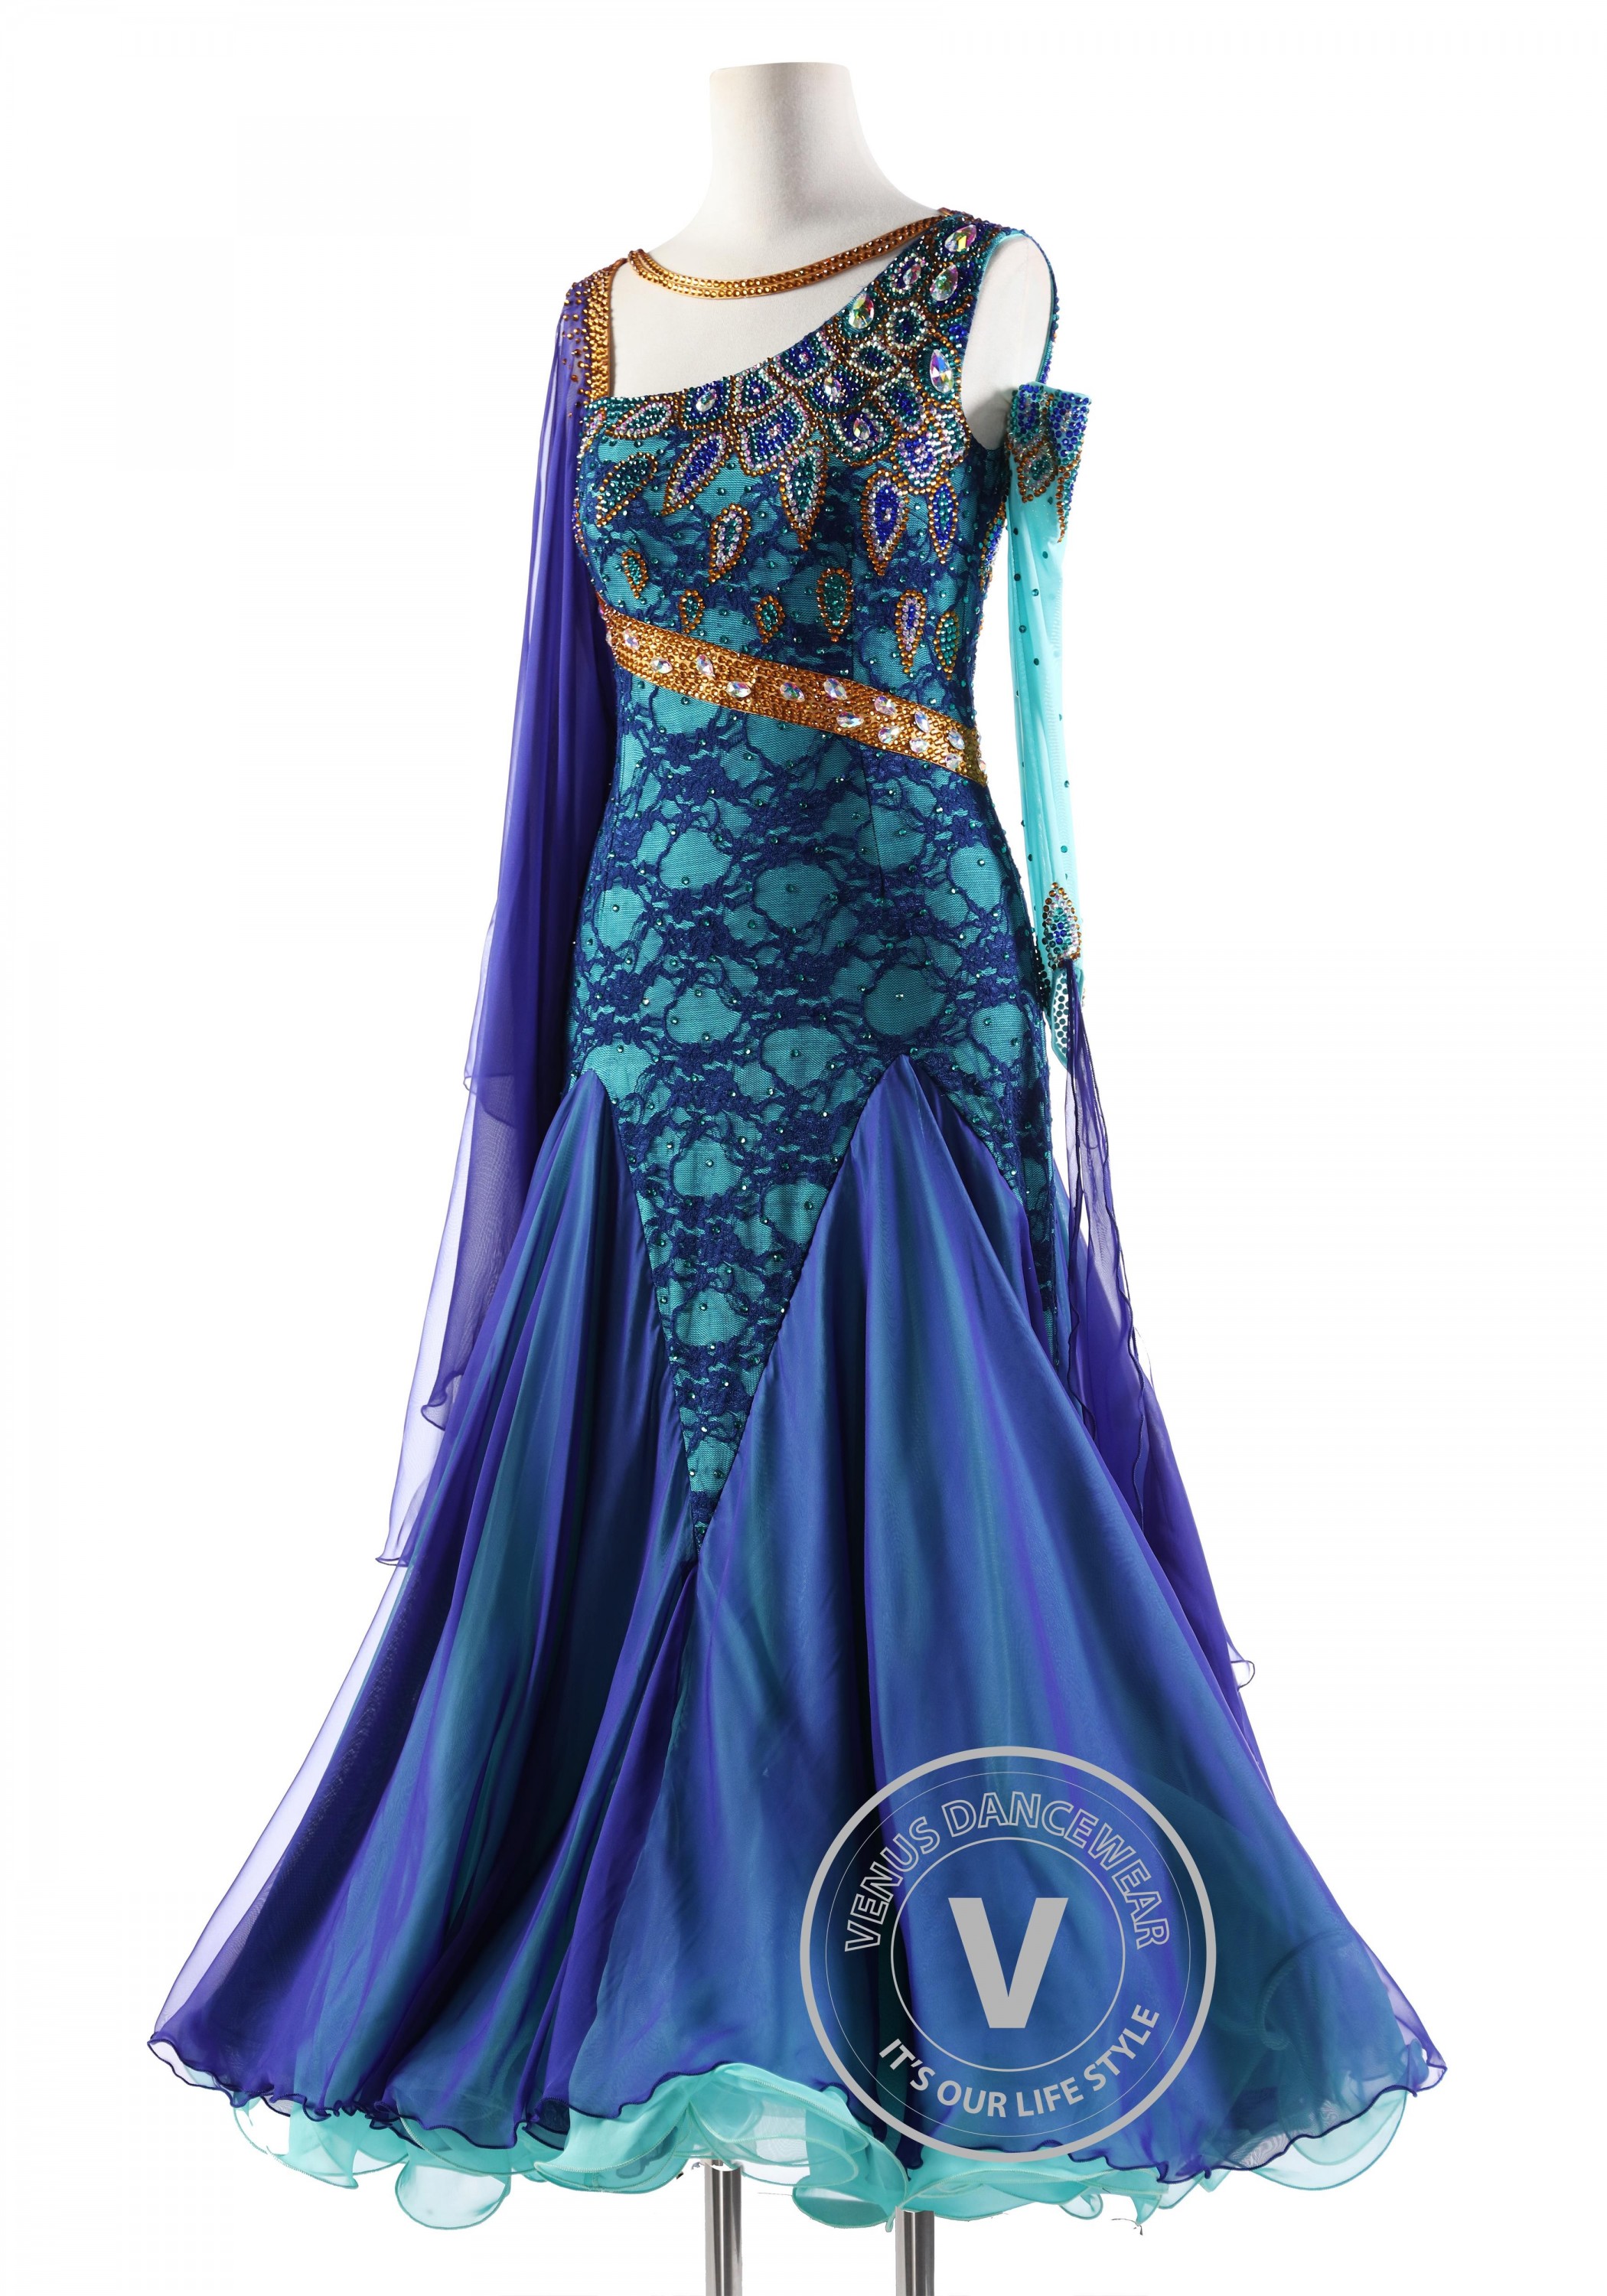 NWT Elie Saab Peacock Blue Sequin Beaded Long Sleeve Gown Dress, Sz 36 |  eBay